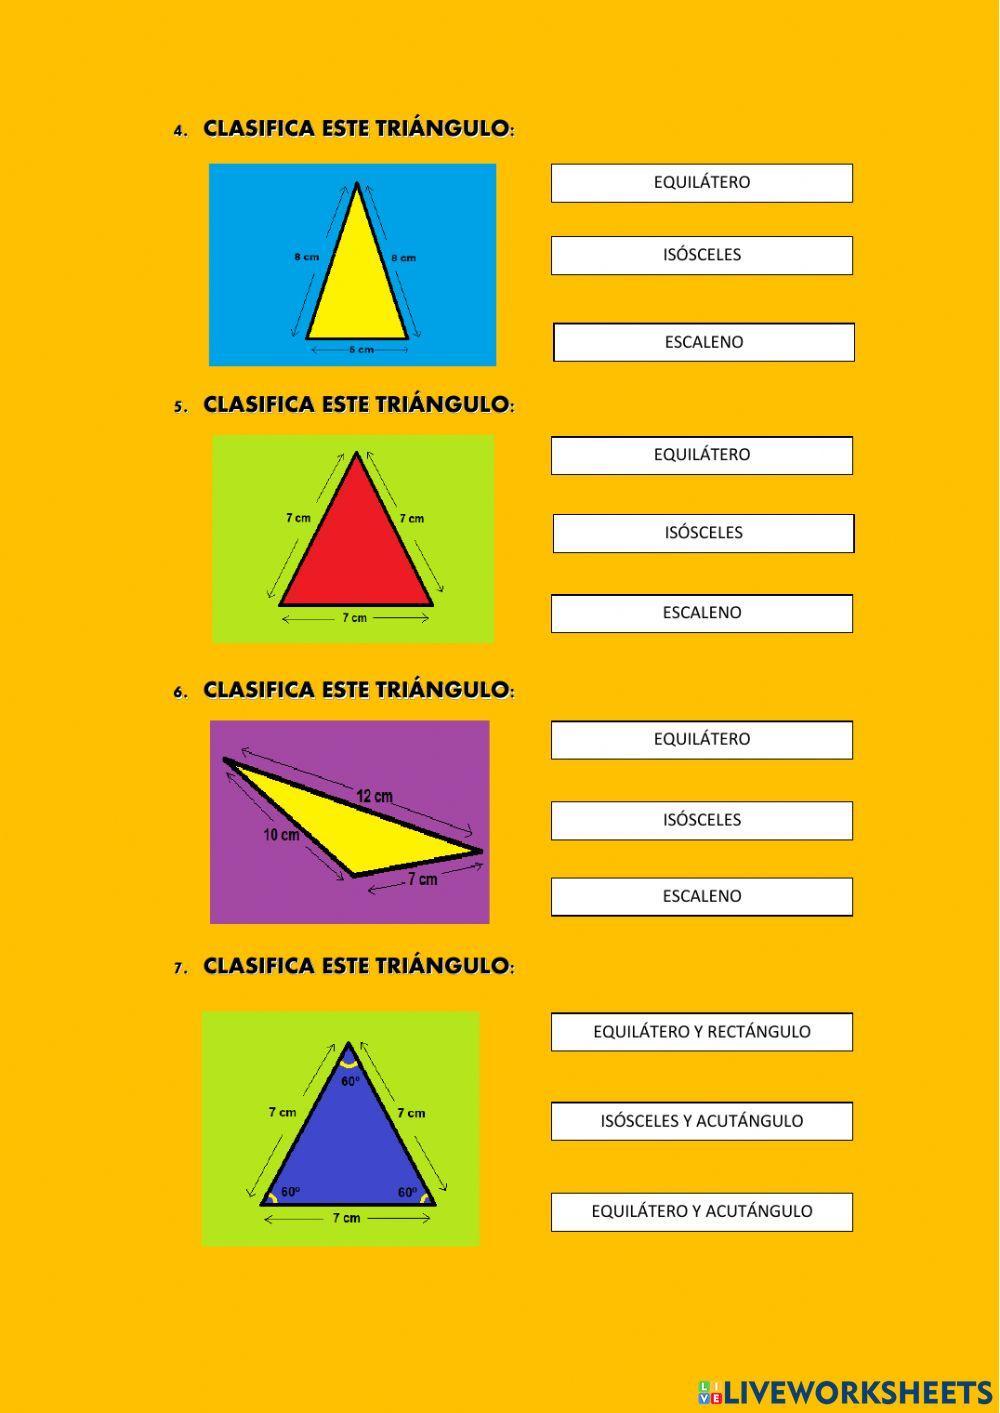 Clasificación de los triángulos